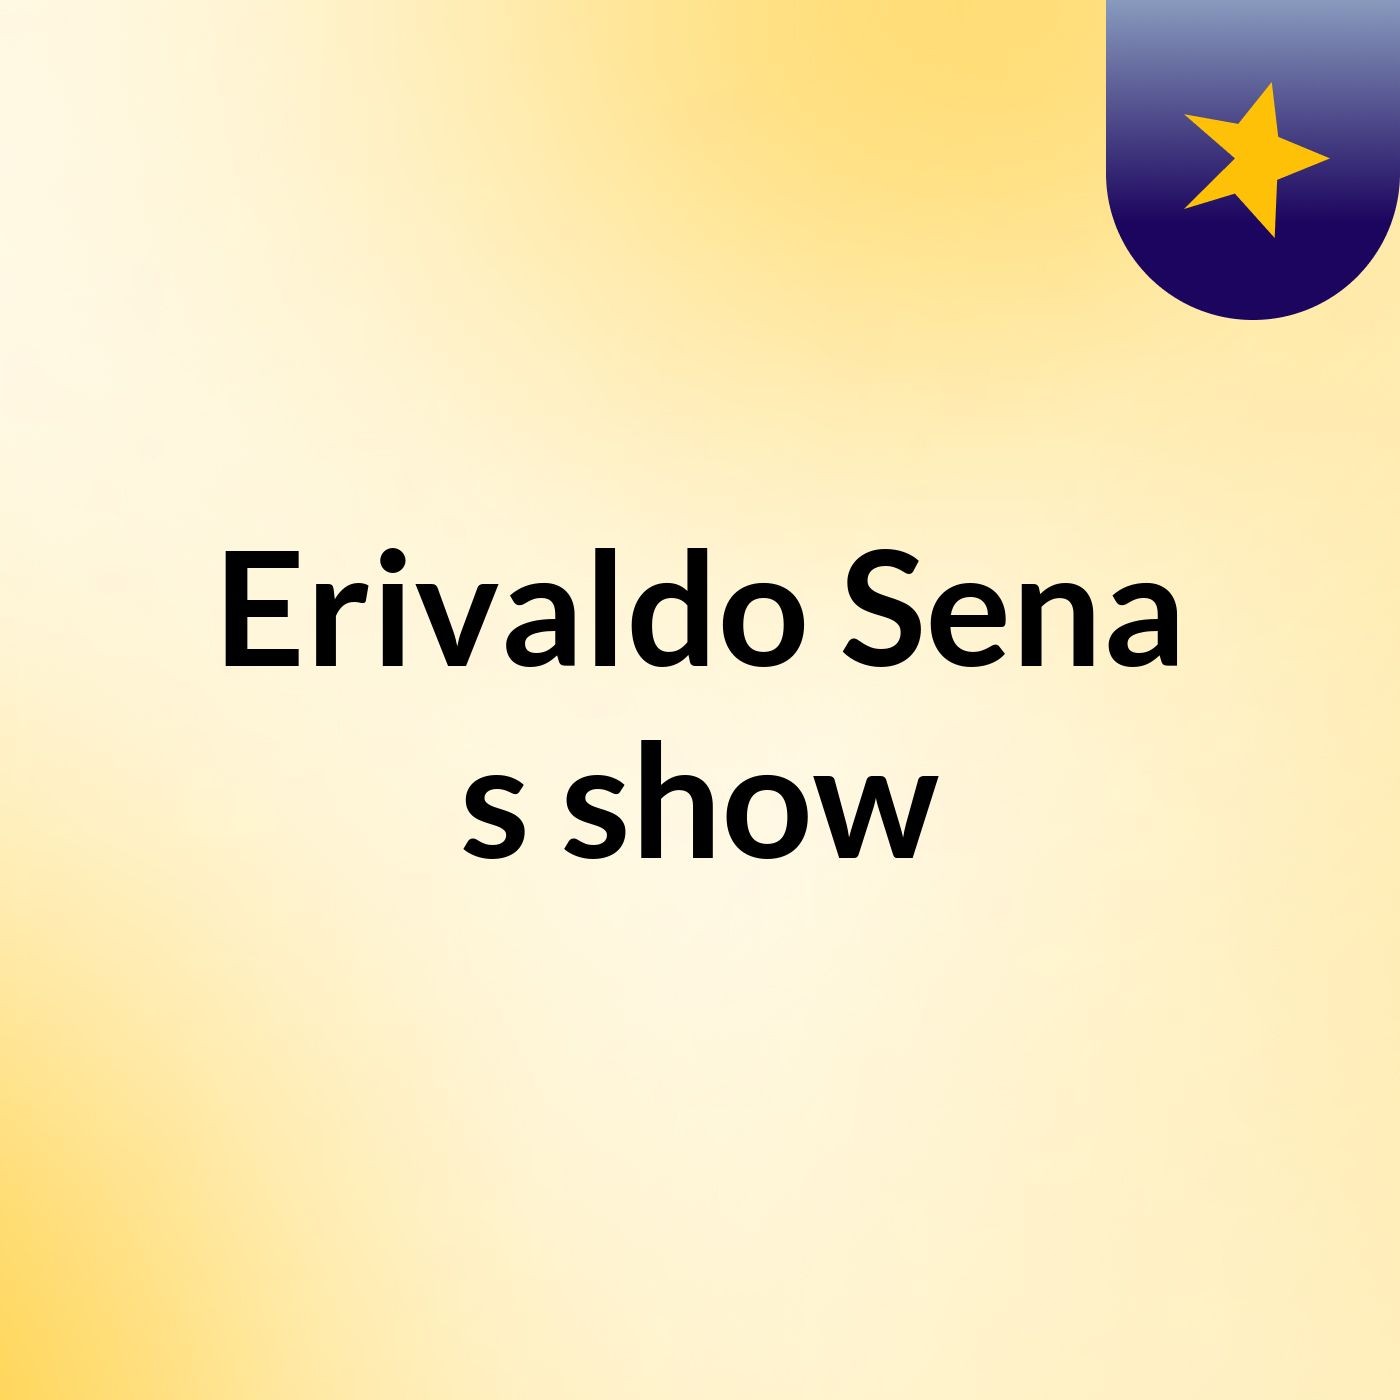 Erivaldo Sena's show